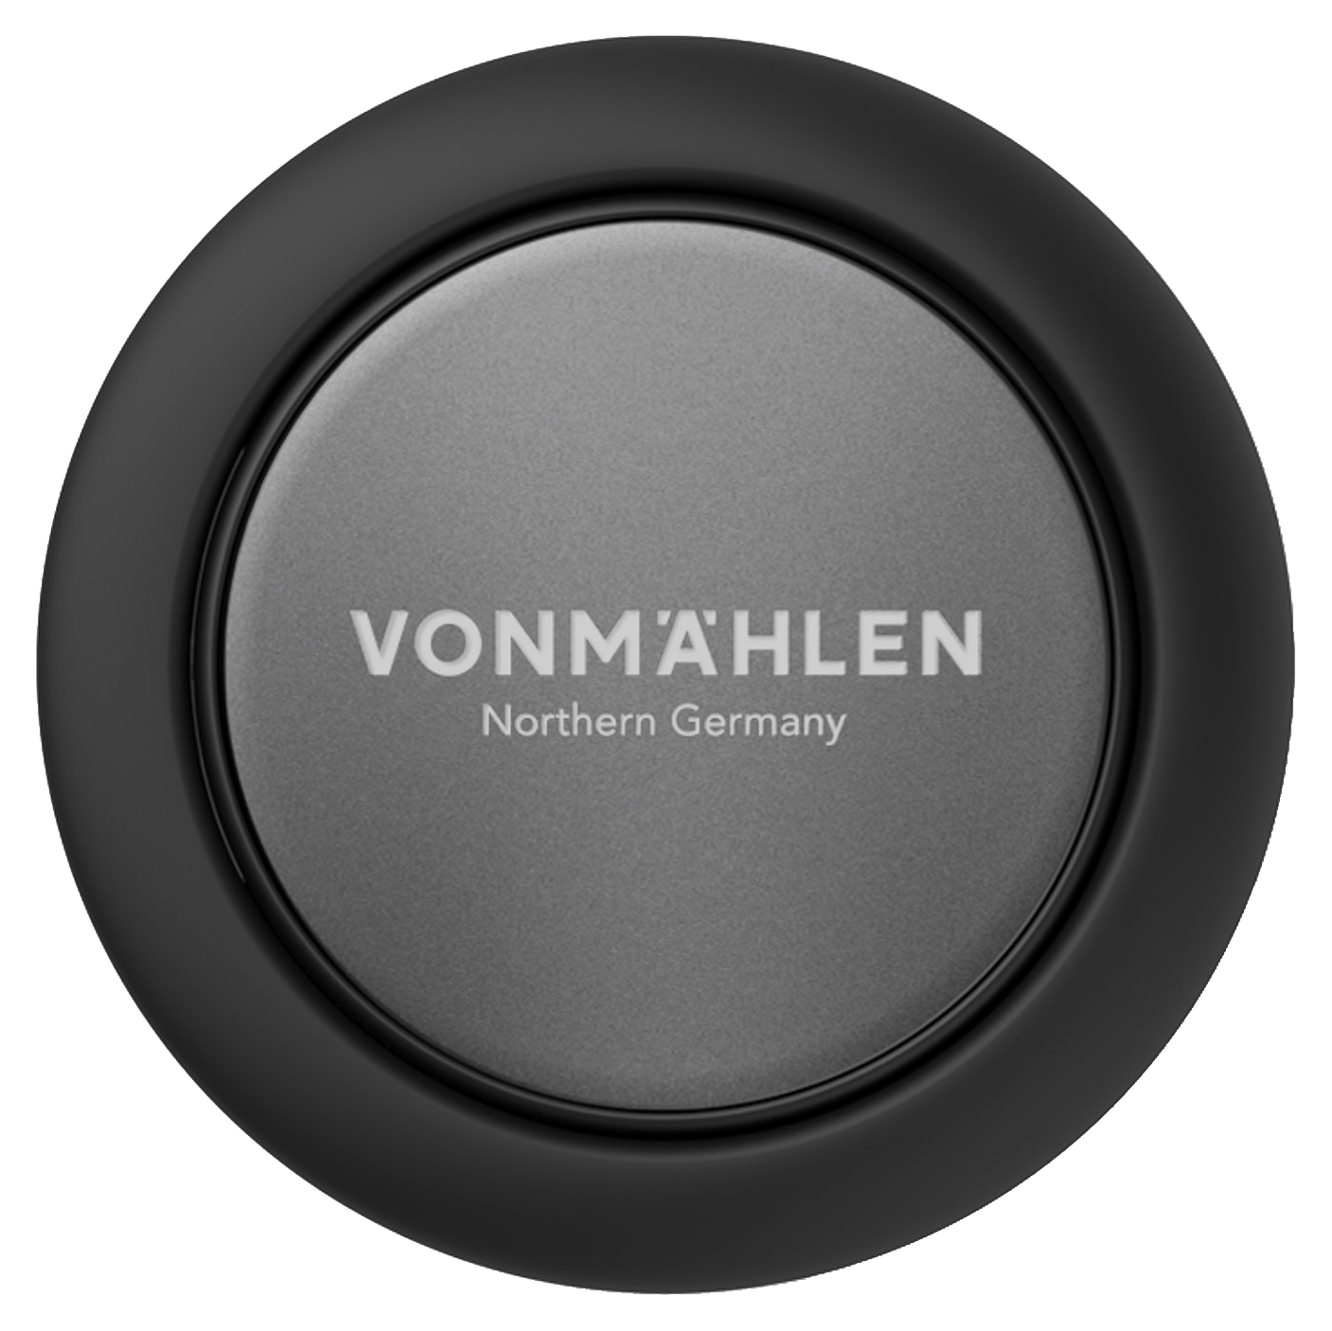 スマホリング おしゃれ リング ホールドリング スマホ スタンド バンカーリング iPhone 全機種対応 ブランド Vonmahlen  フォンメーレン ドイツ 海外